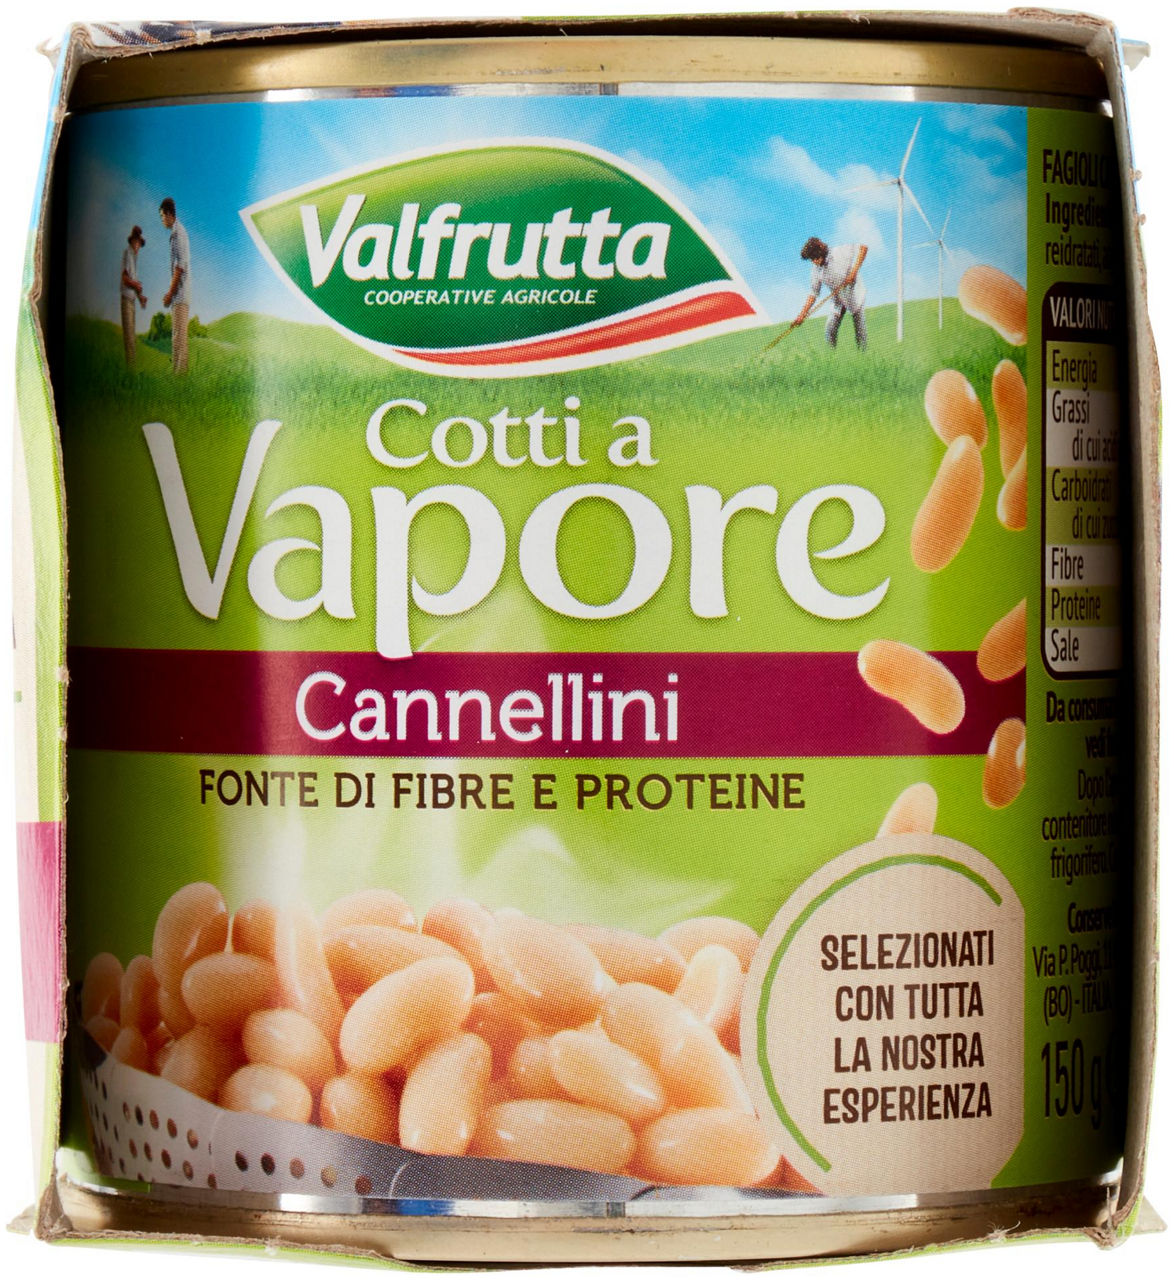 CANNELLINI VALFRUTTA COTTI A VAPORE G 140X3 - 3